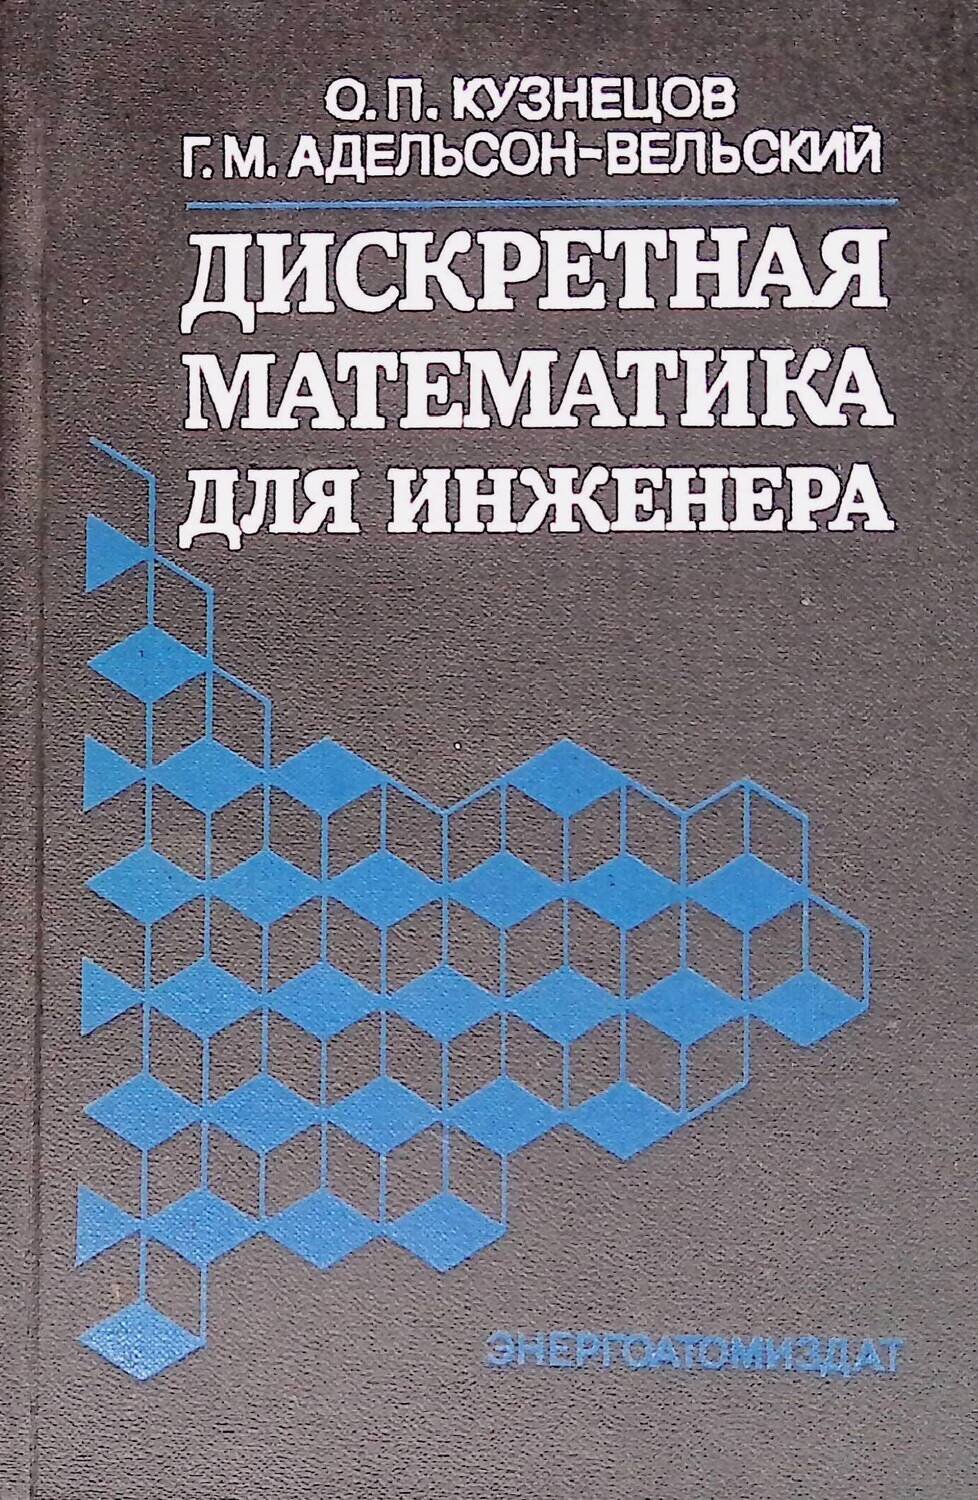 Дискретная математика для инженера; О. П. Кузнецов, Г. М. Адельсон-Вельский